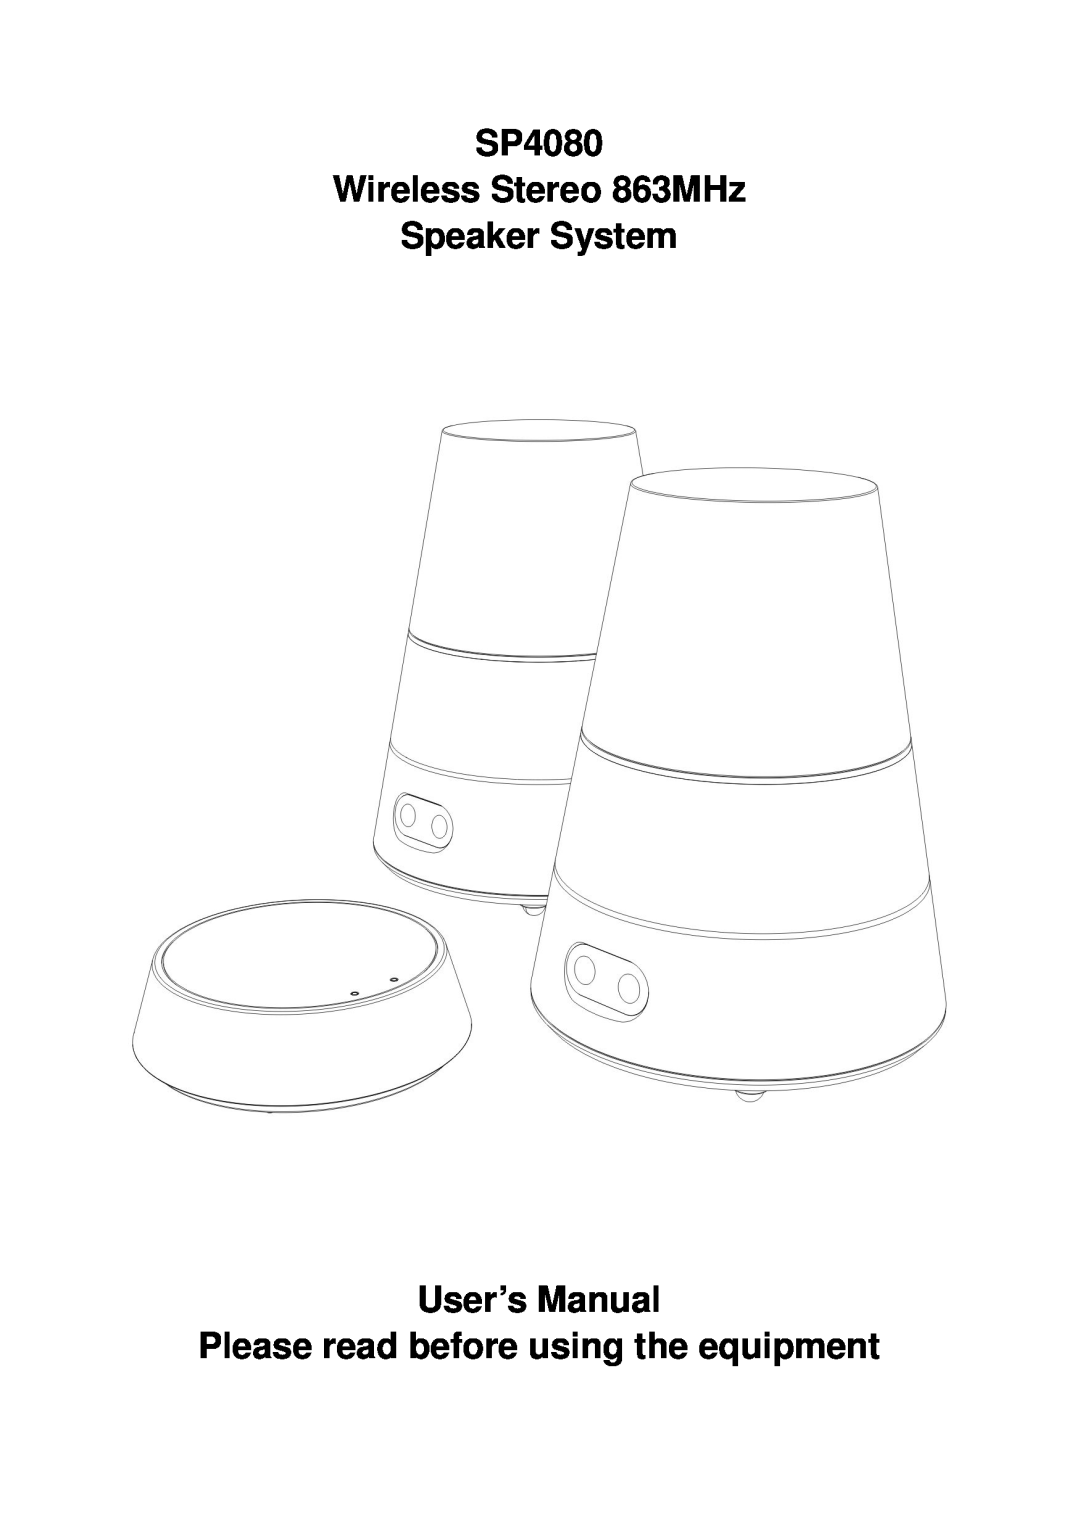 Mark Feldstein & Assoc user manual SP4080 Wireless Stereo 863MHz Speaker System, User’s Manual 